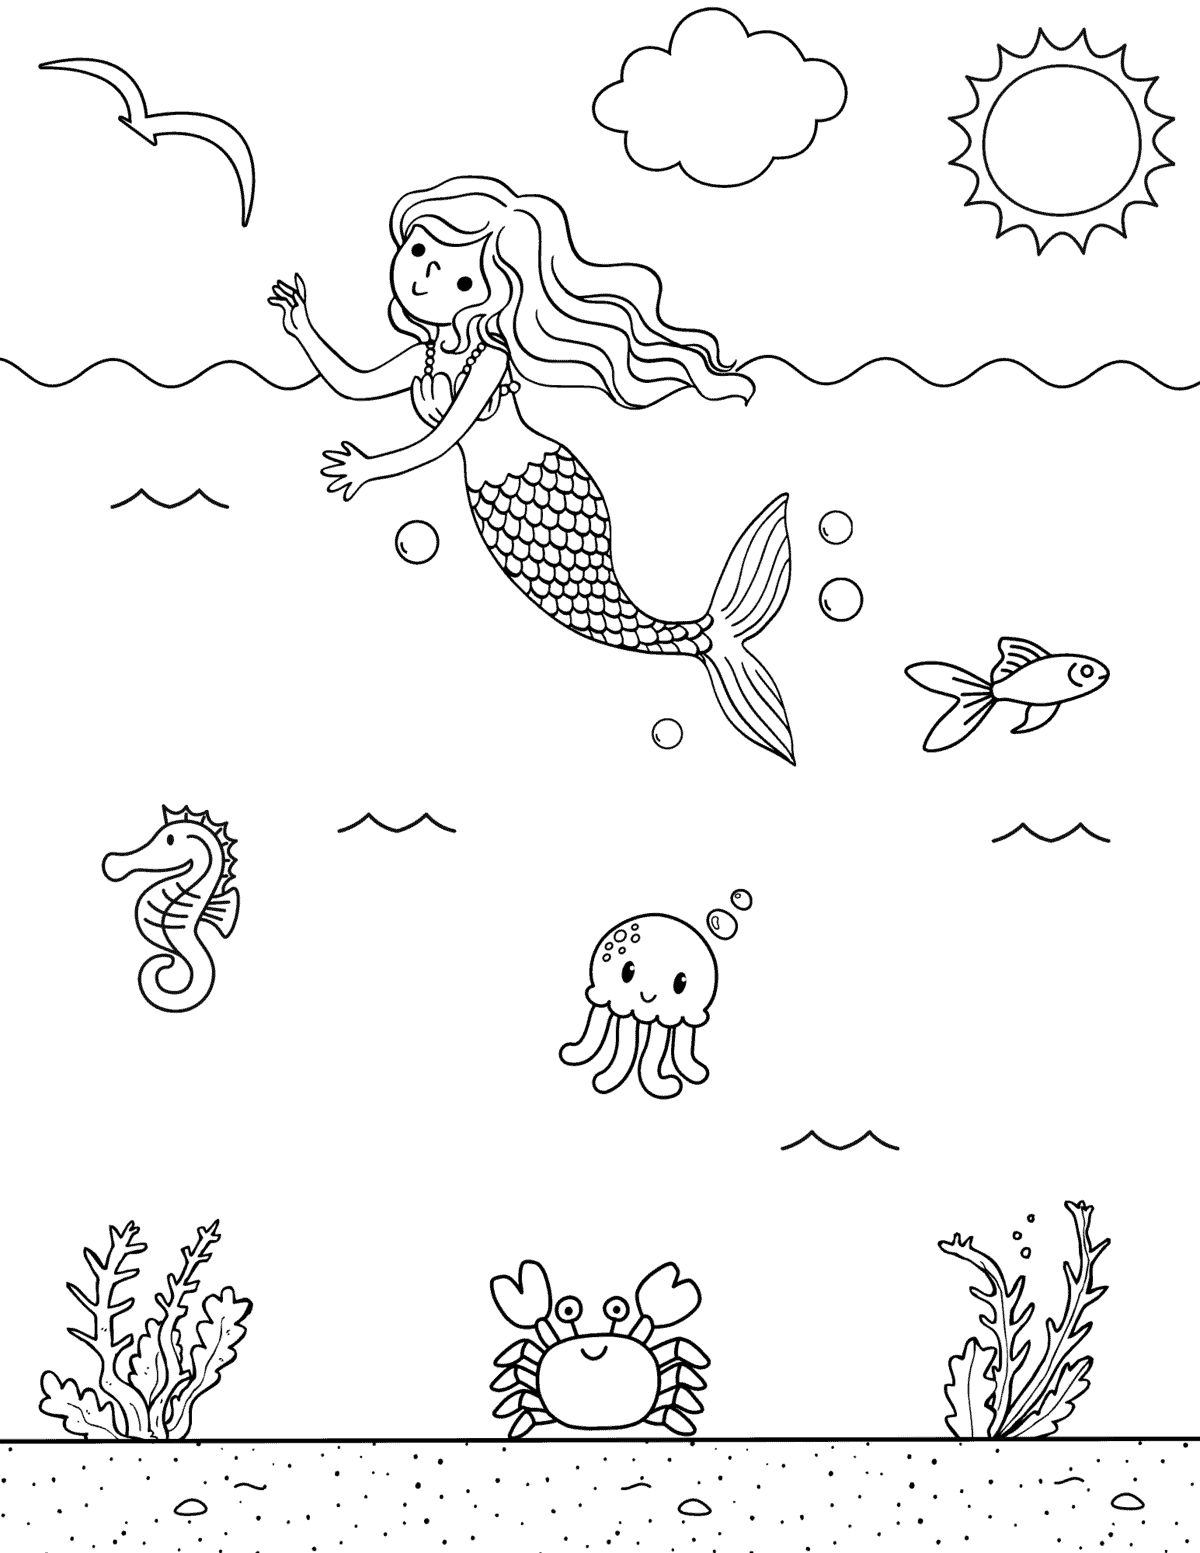 coloring page of a mermaid waving at a bird